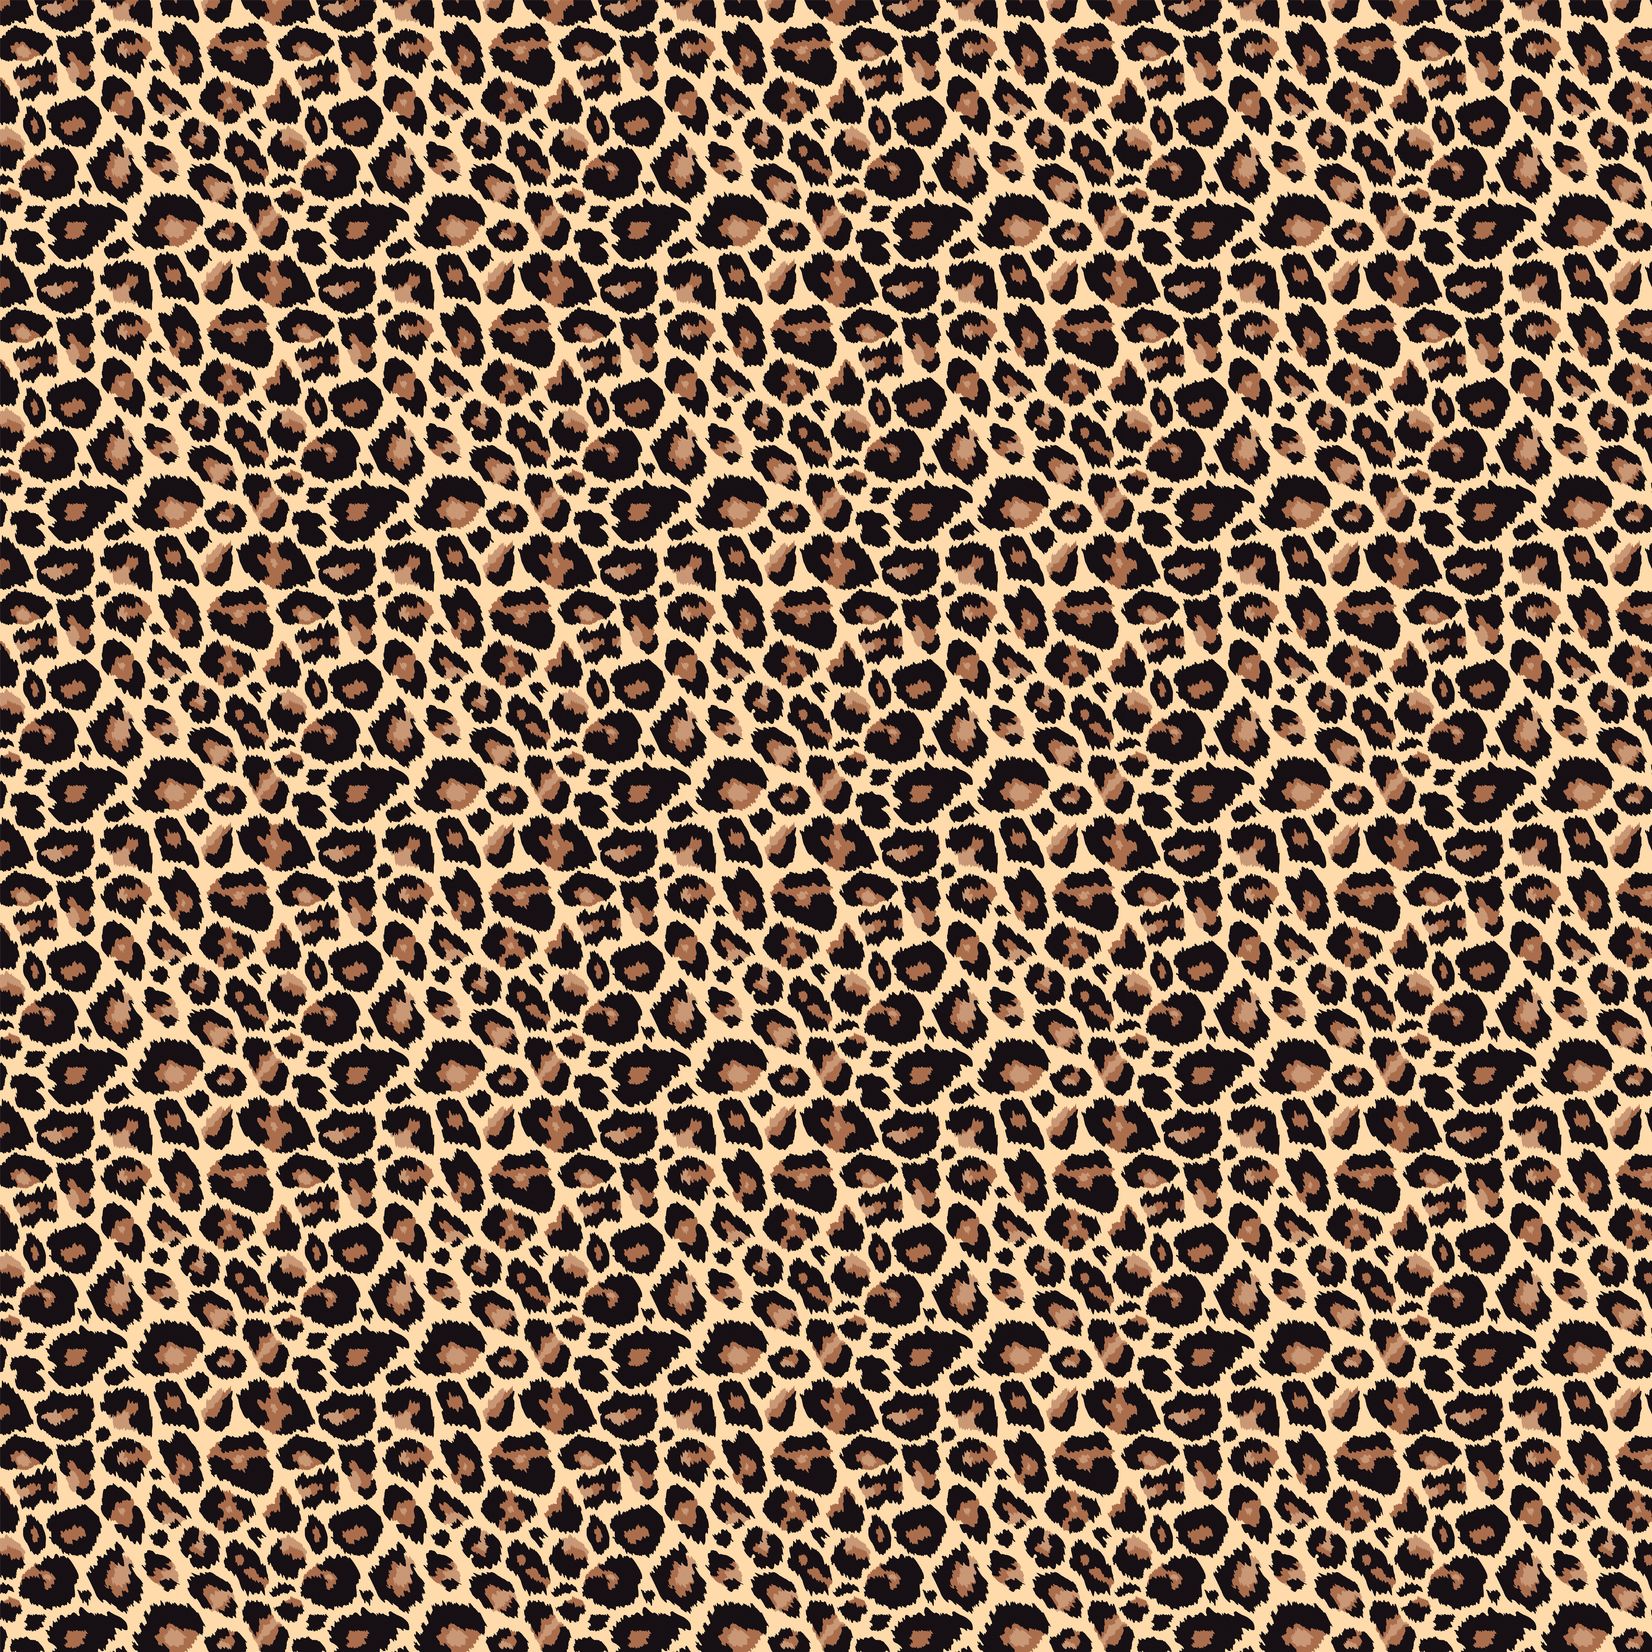 https://cdn.shoplightspeed.com/shops/640826/files/36326348/1652x1652x1/tvd-modern-leopard.jpg